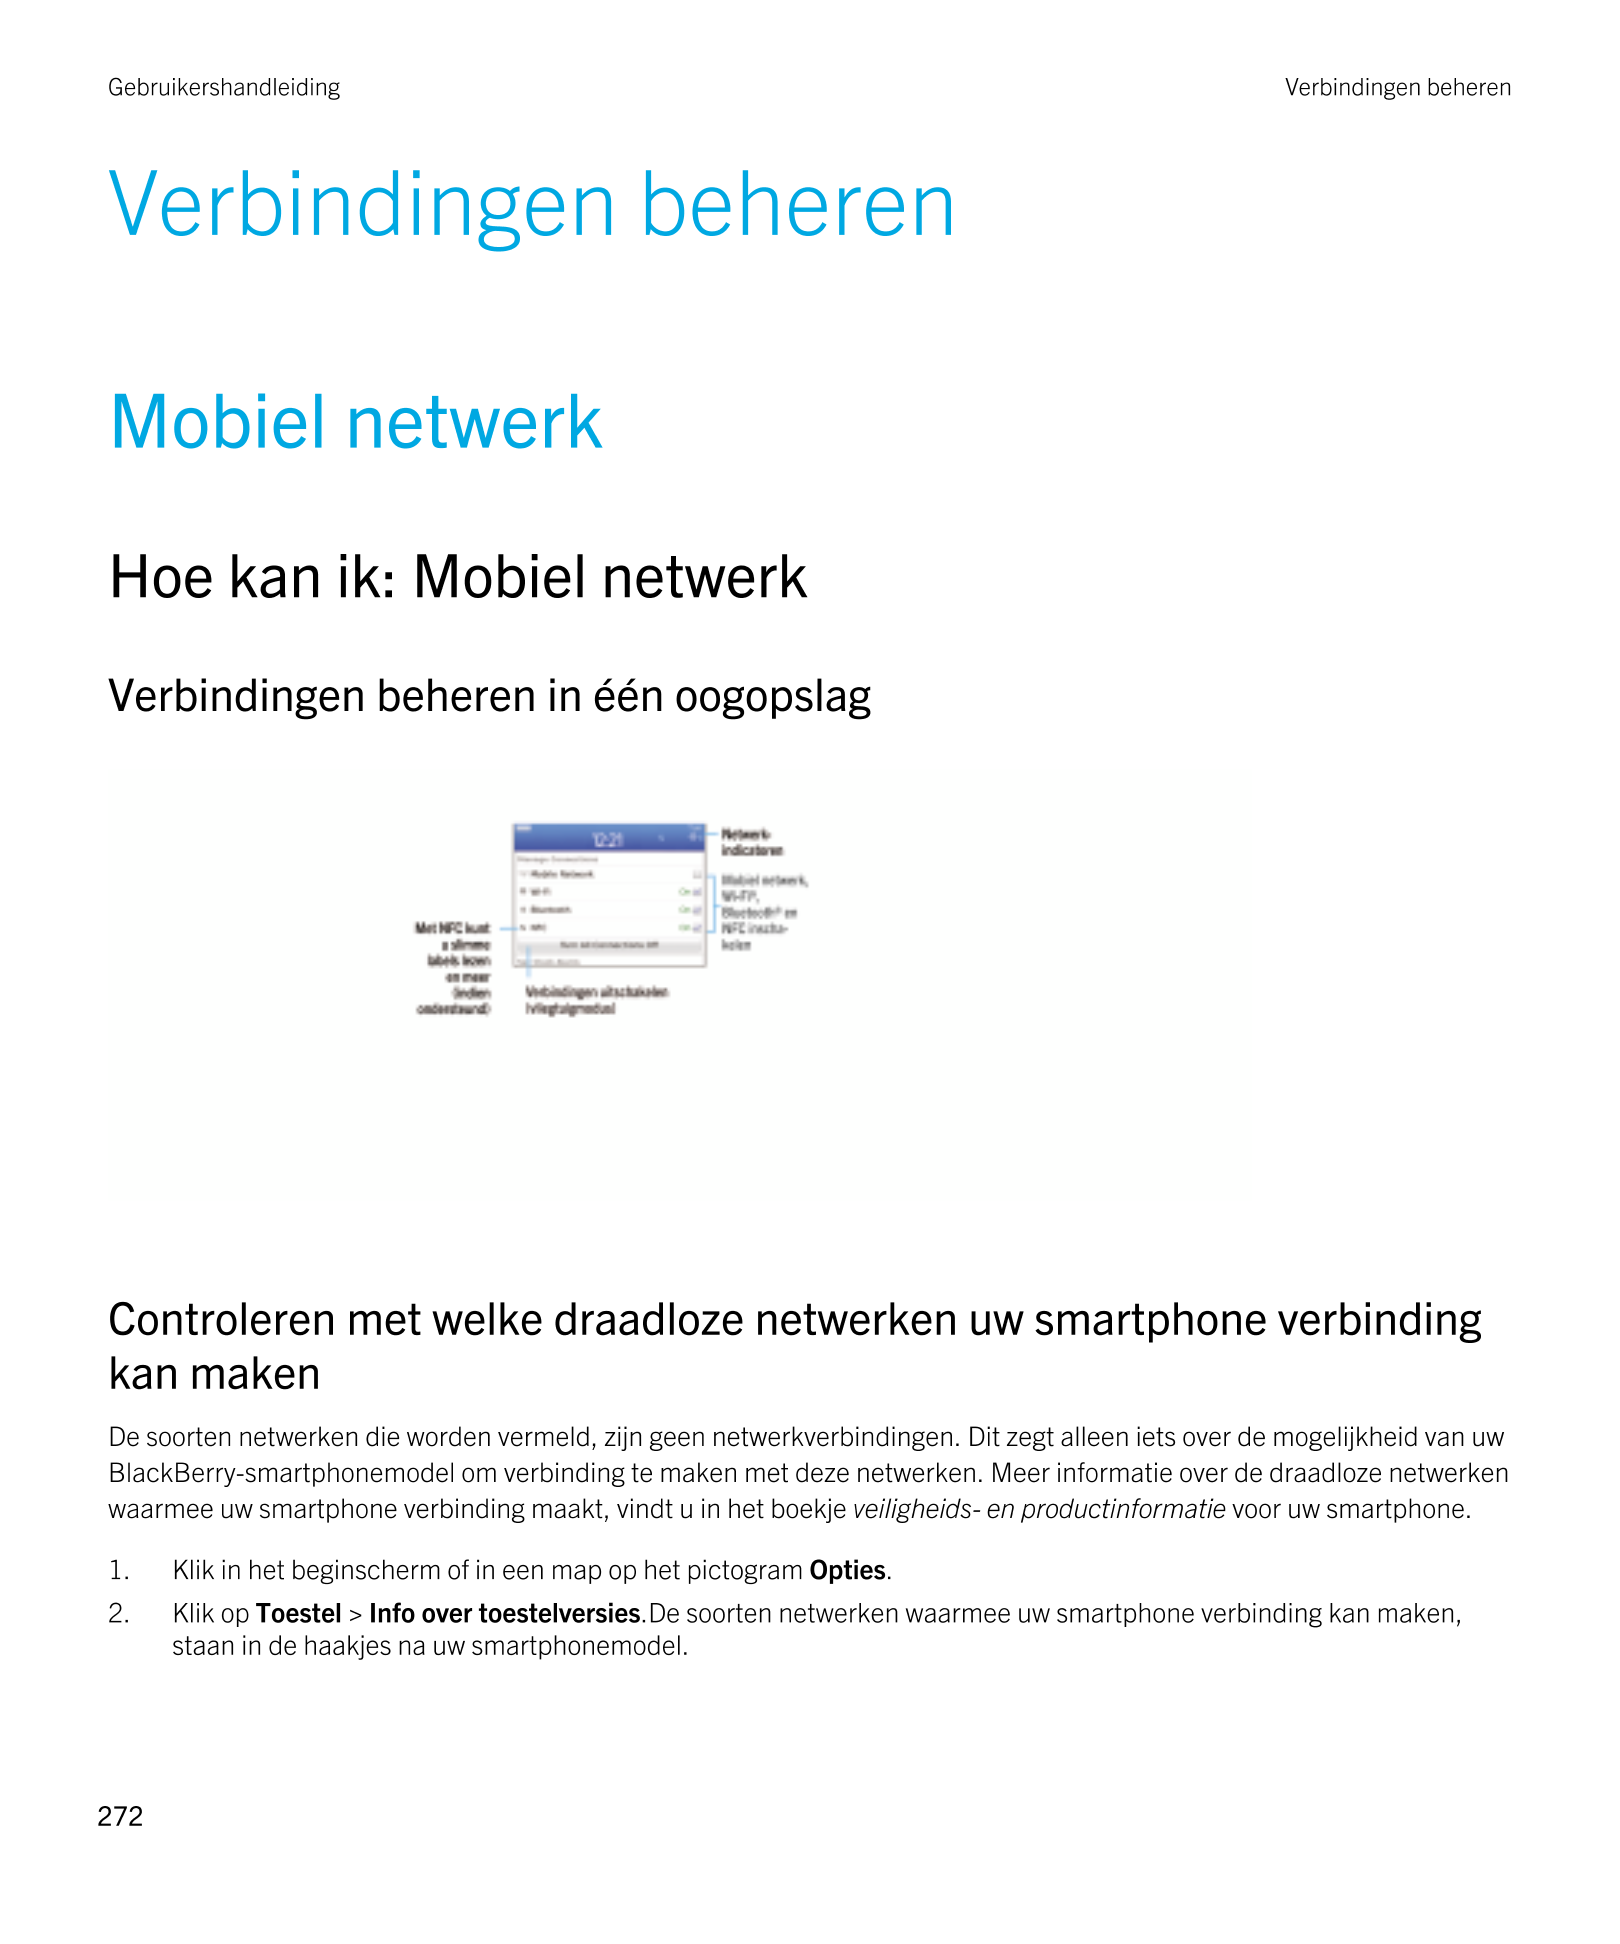 Gebruikershandleiding Verbindingen beheren
Verbindingen beheren
Mobiel netwerk
Hoe kan ik: Mobiel netwerk
Verbindingen beheren i